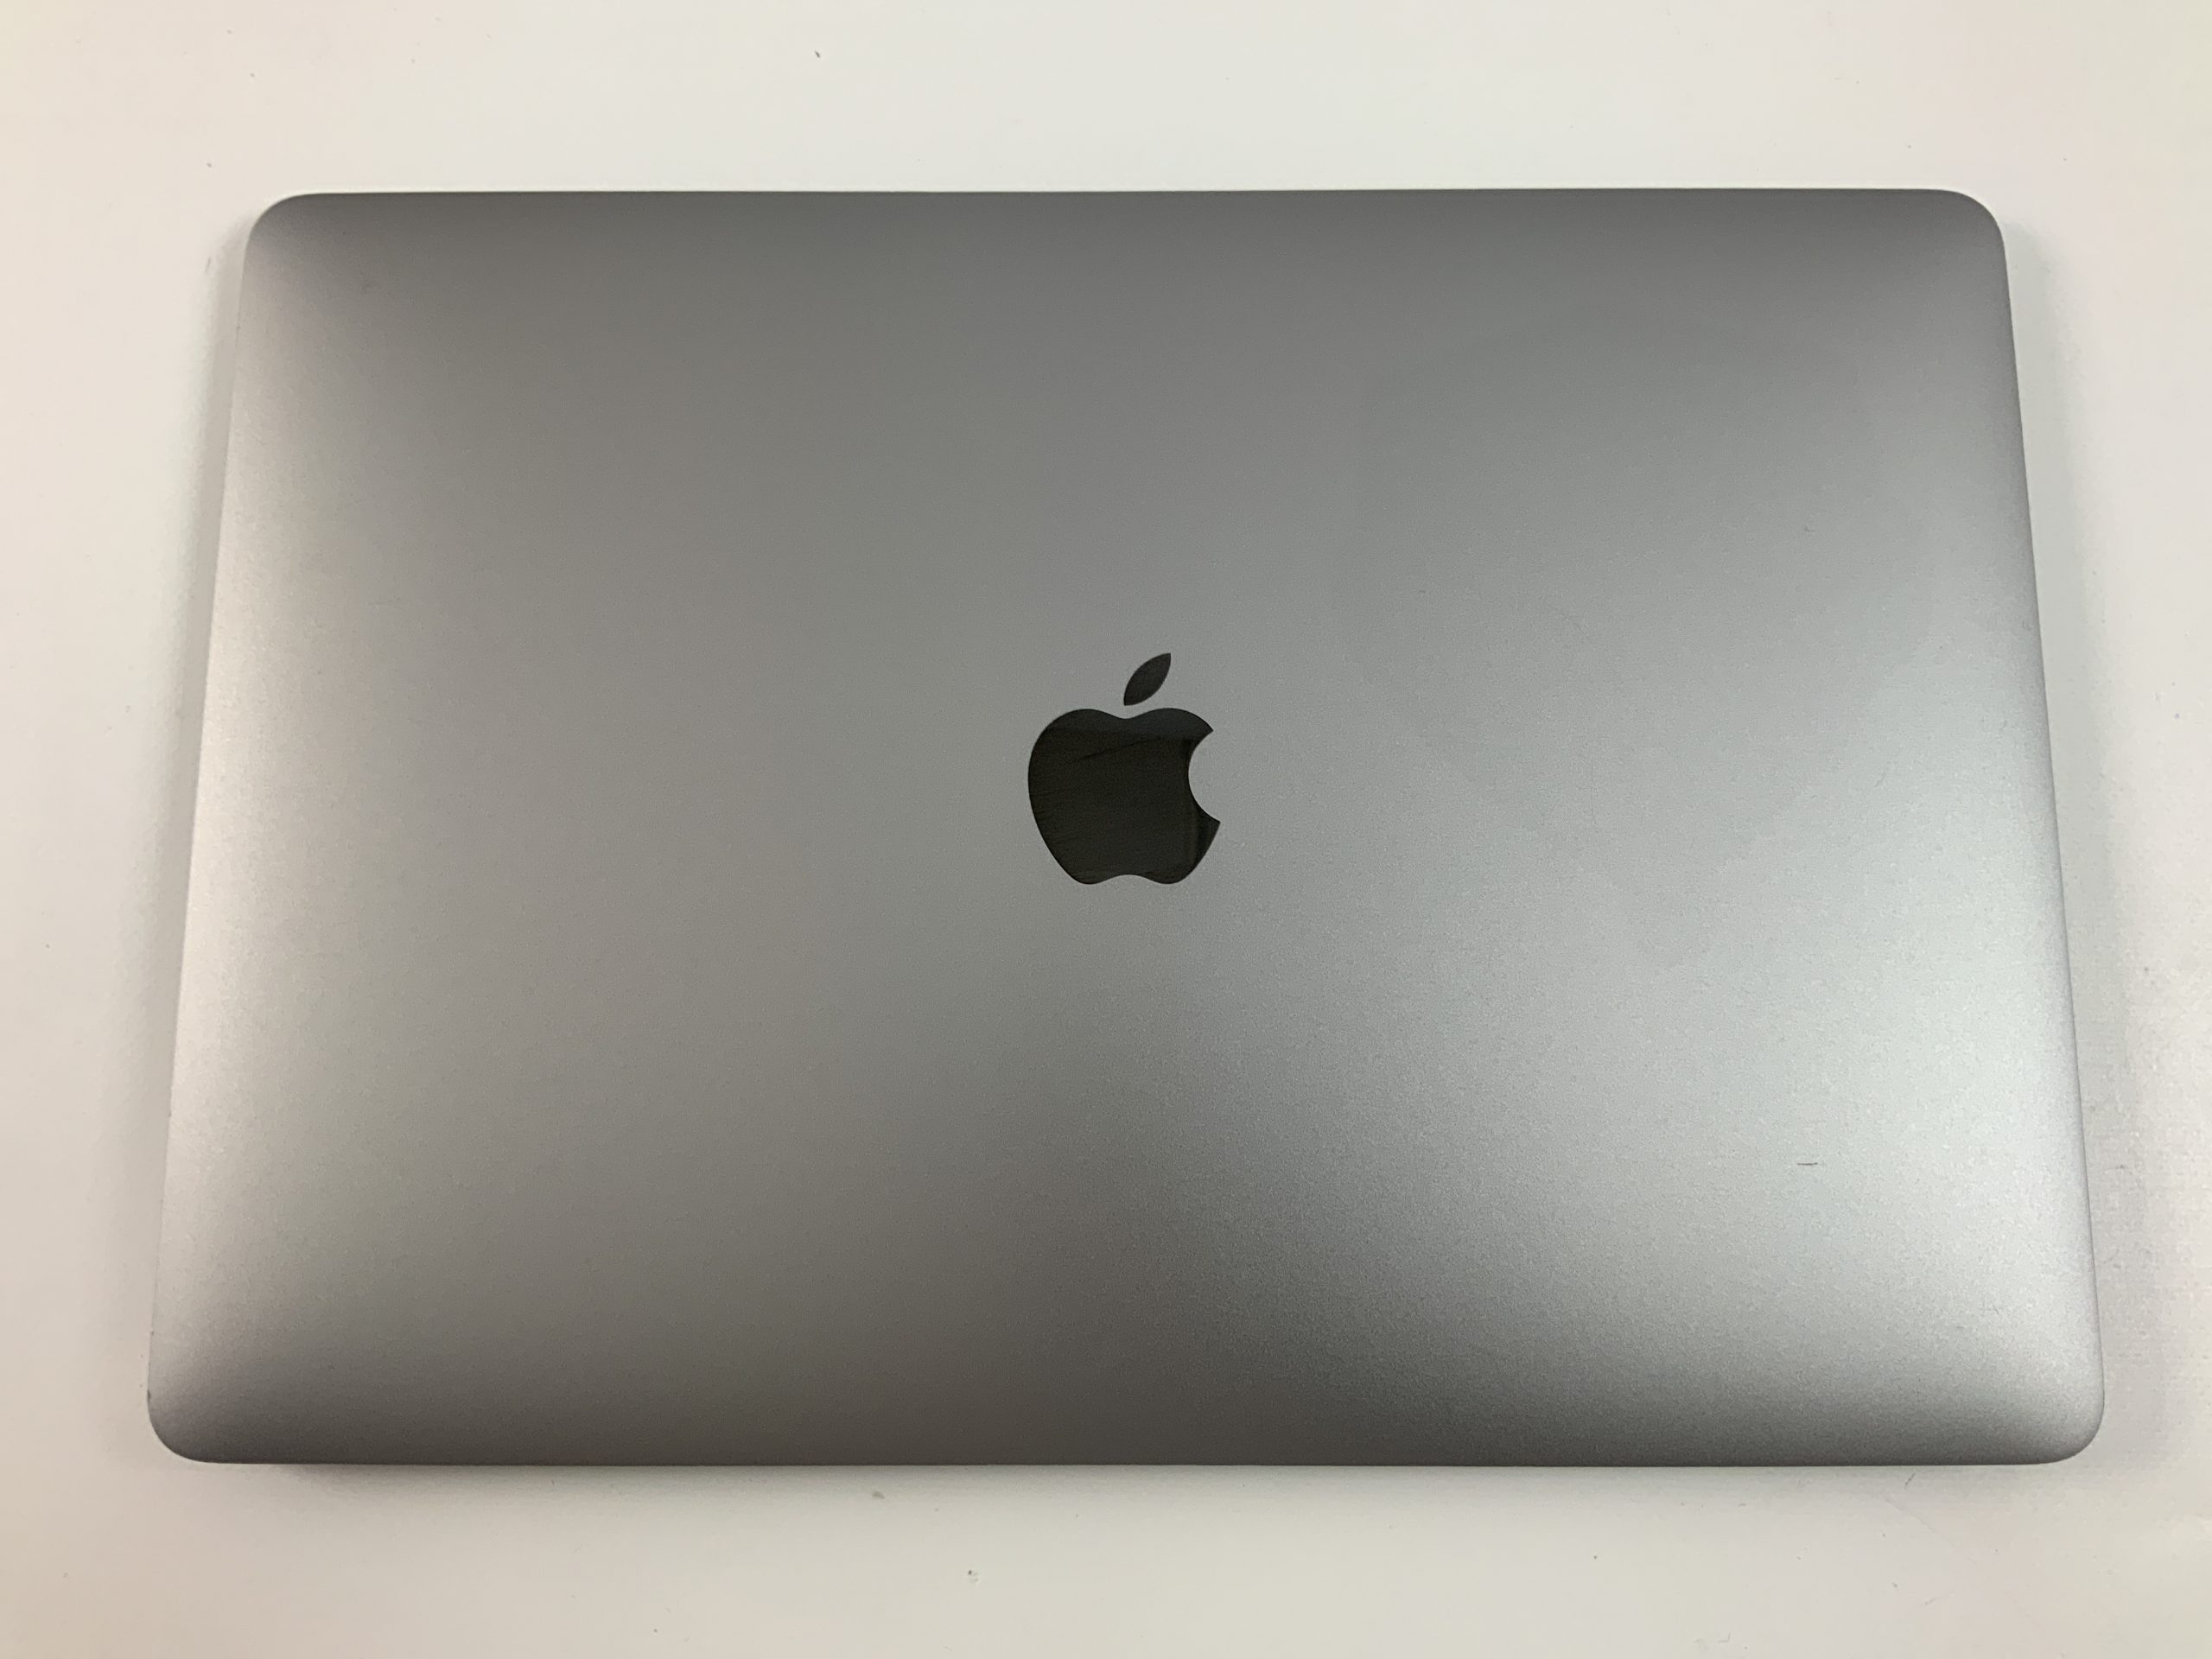 MacBook Air 13" Mid 2019 (Intel Core i5 1.6 GHz 16 GB RAM 128 GB SSD), Space Gray, Intel Core i5 1.6 GHz, 16 GB RAM, 128 GB SSD, imagen 4